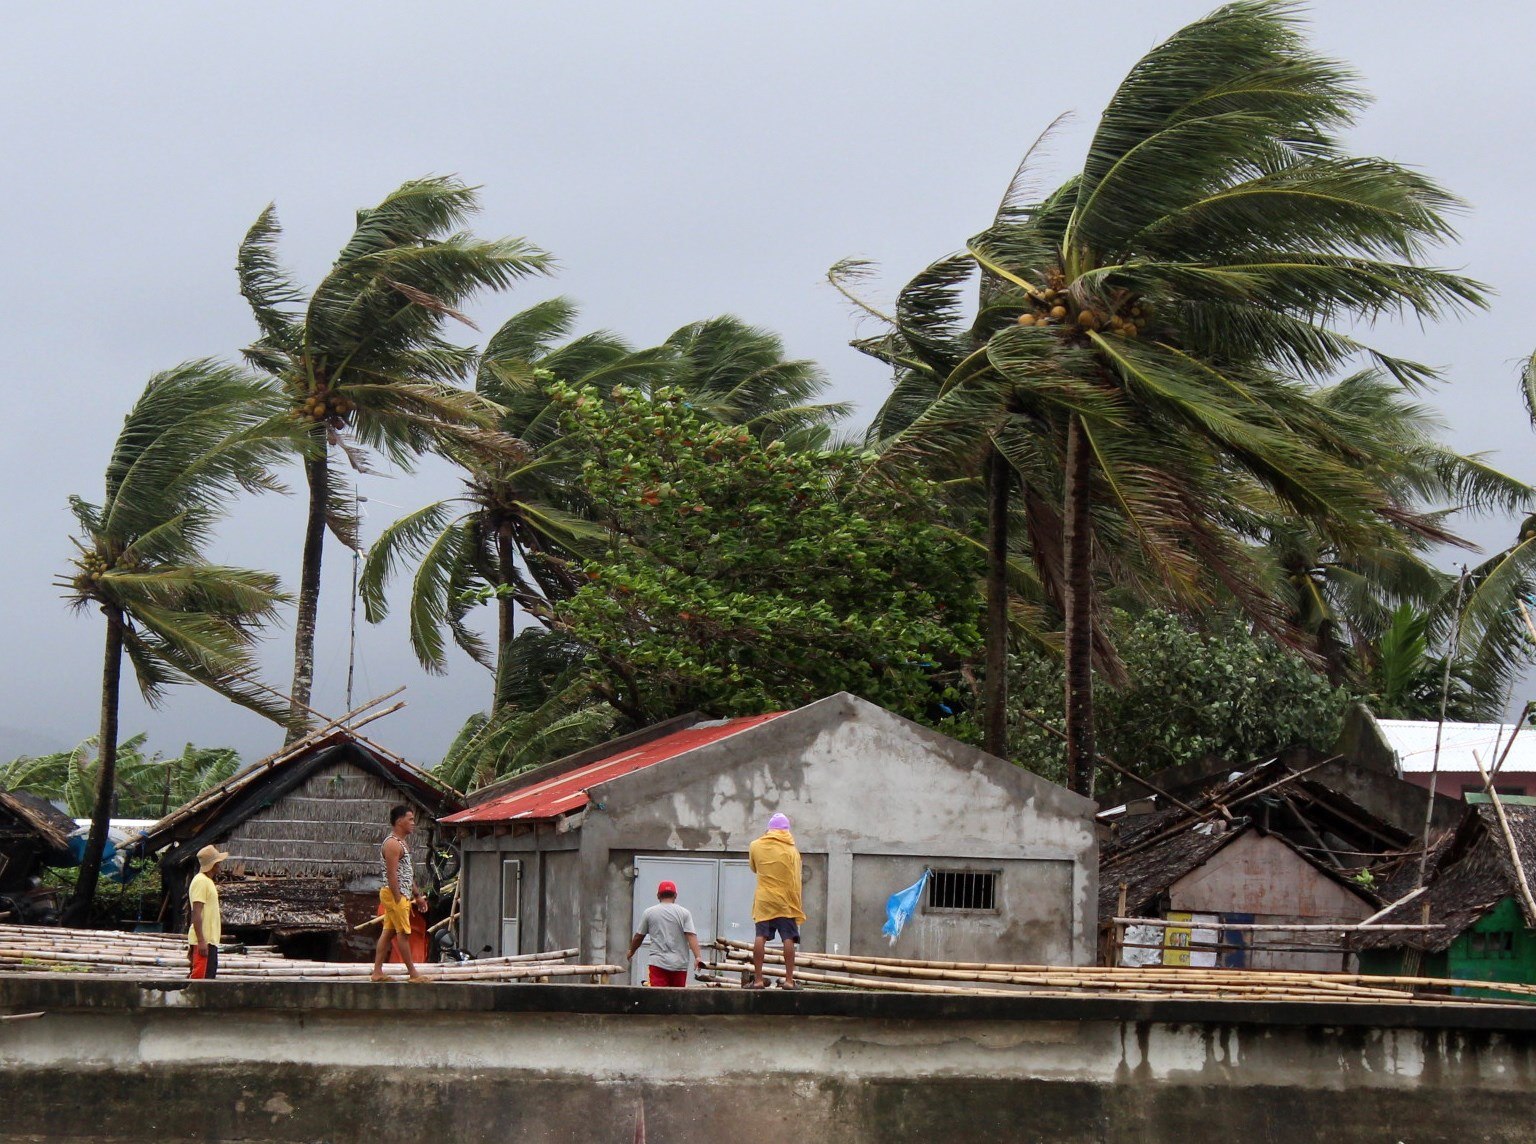 Los aldeanos ven fuertes vientos que soplan árboles junto a las casas en la ciudad de Calabanga, provincia de Camarines sur, Filipinas. (Foto Prensa Libre: EFE)